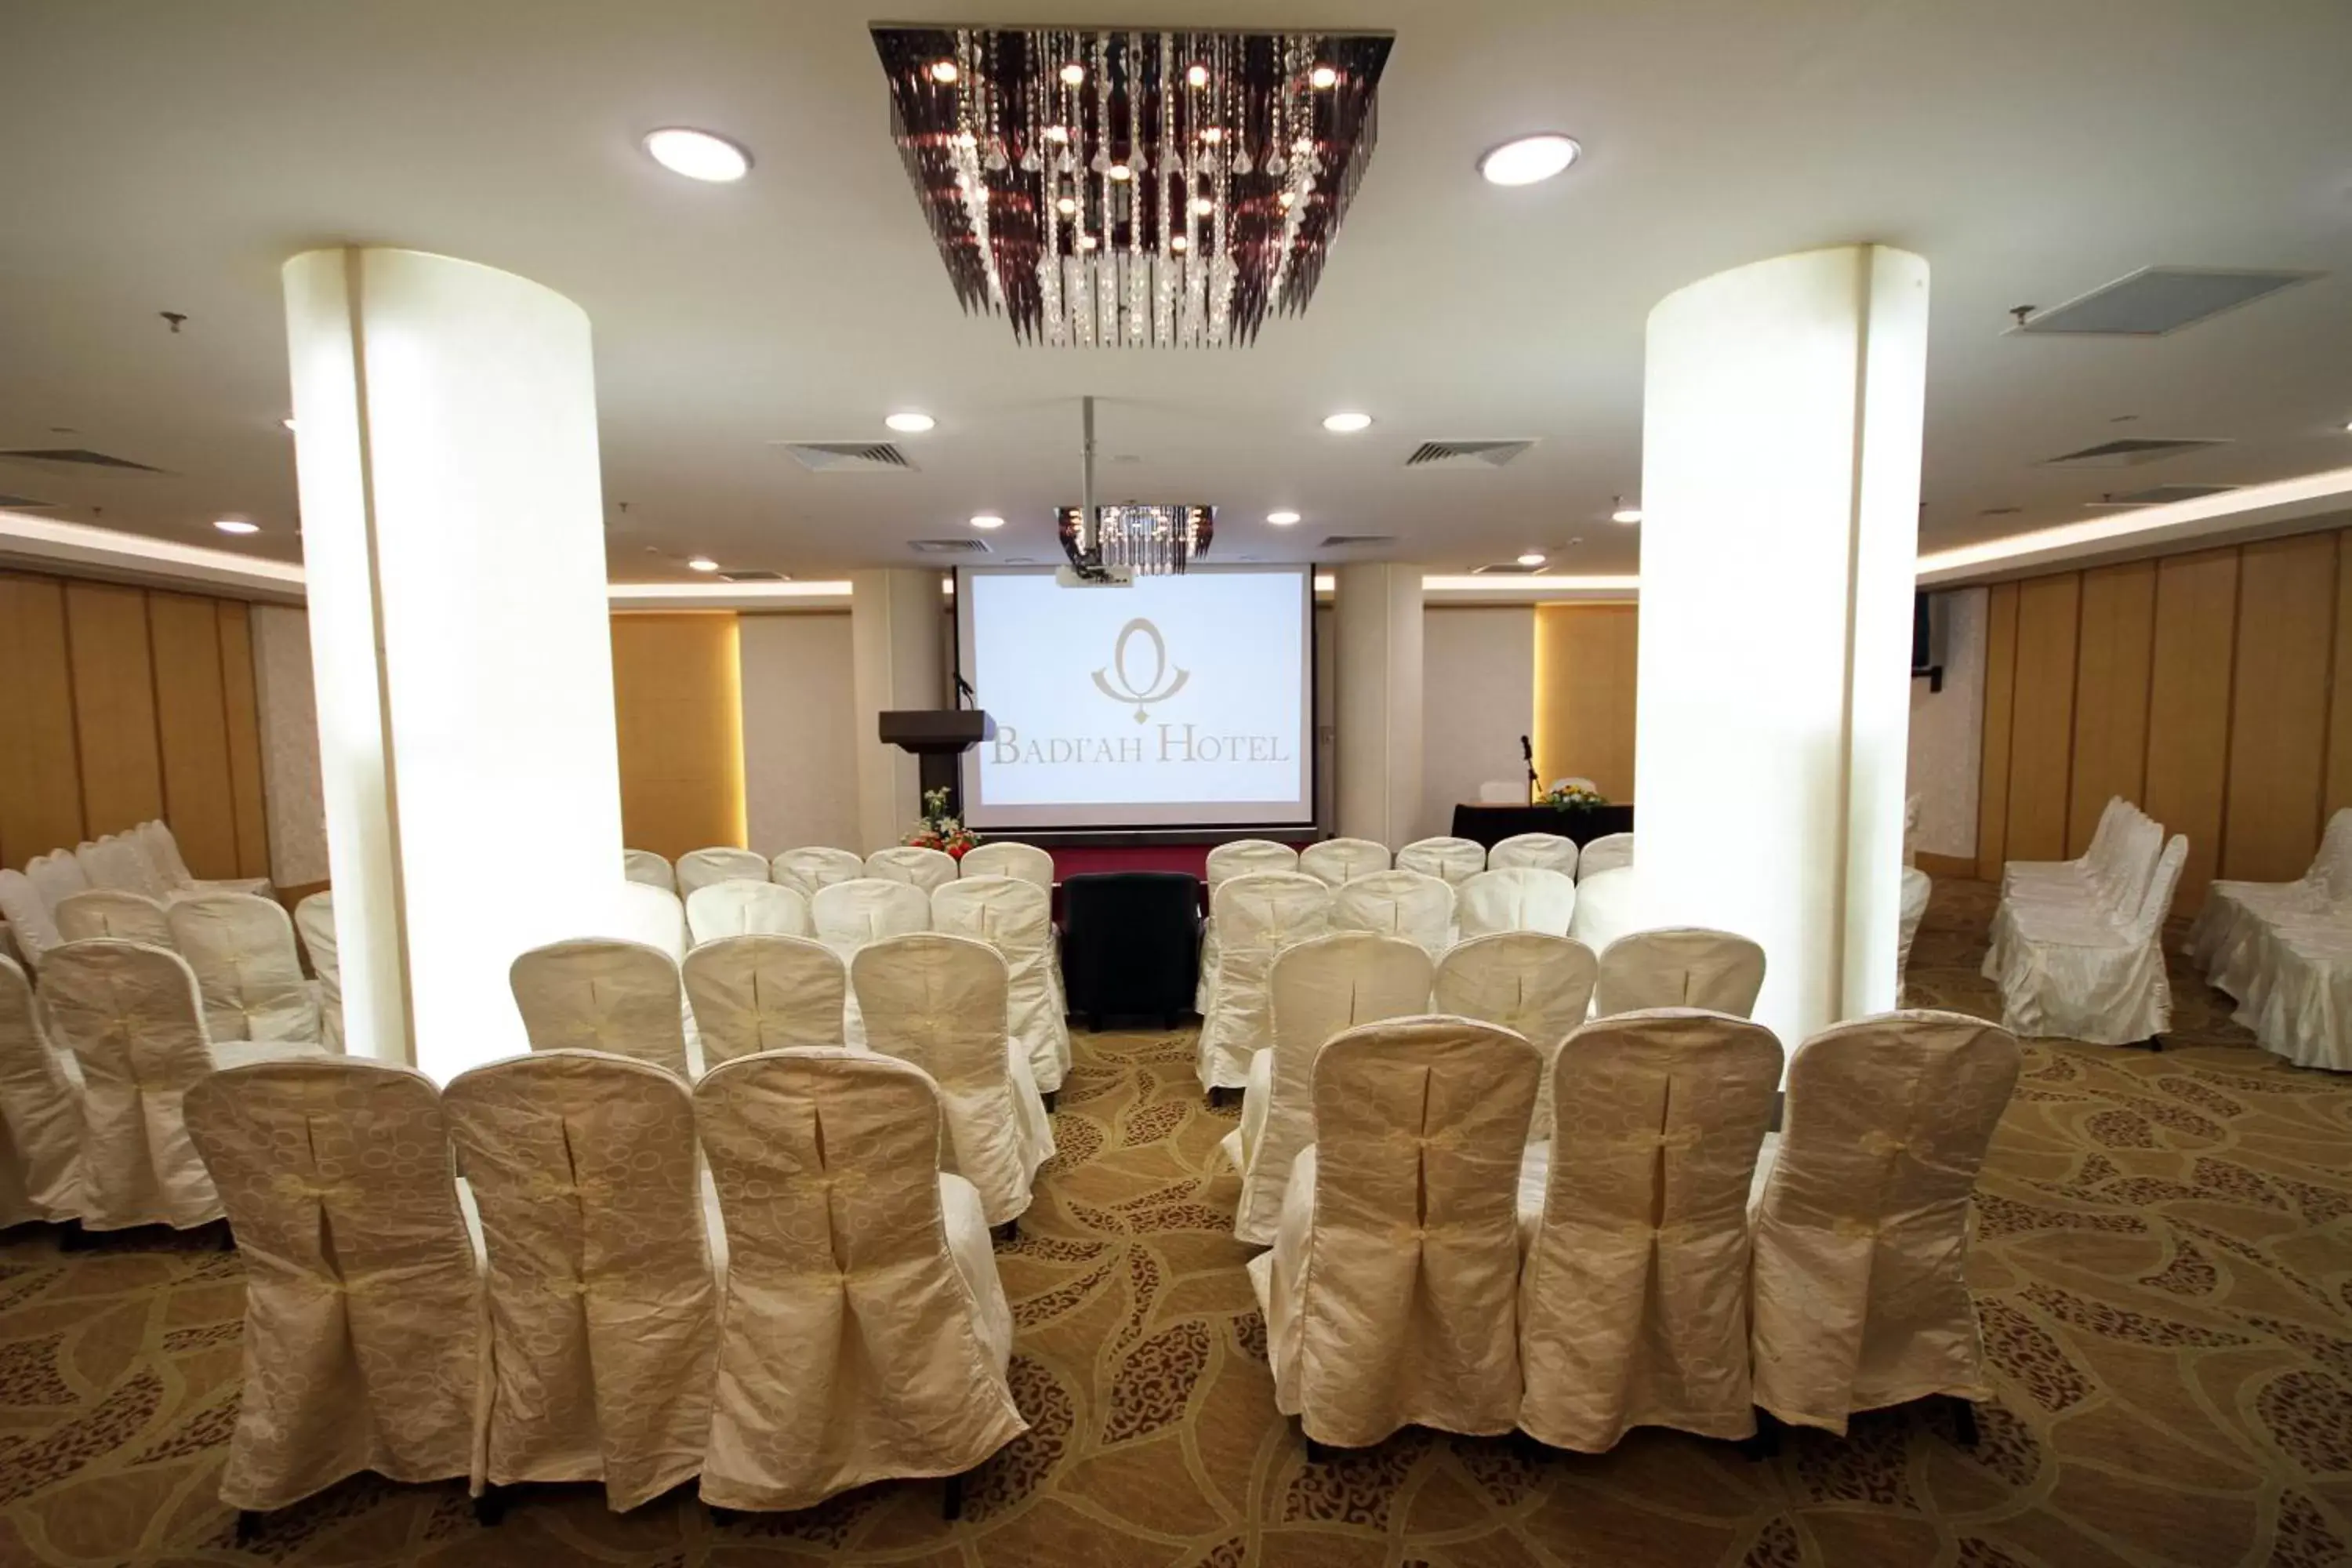 Banquet/Function facilities, Banquet Facilities in Badi'ah Hotel